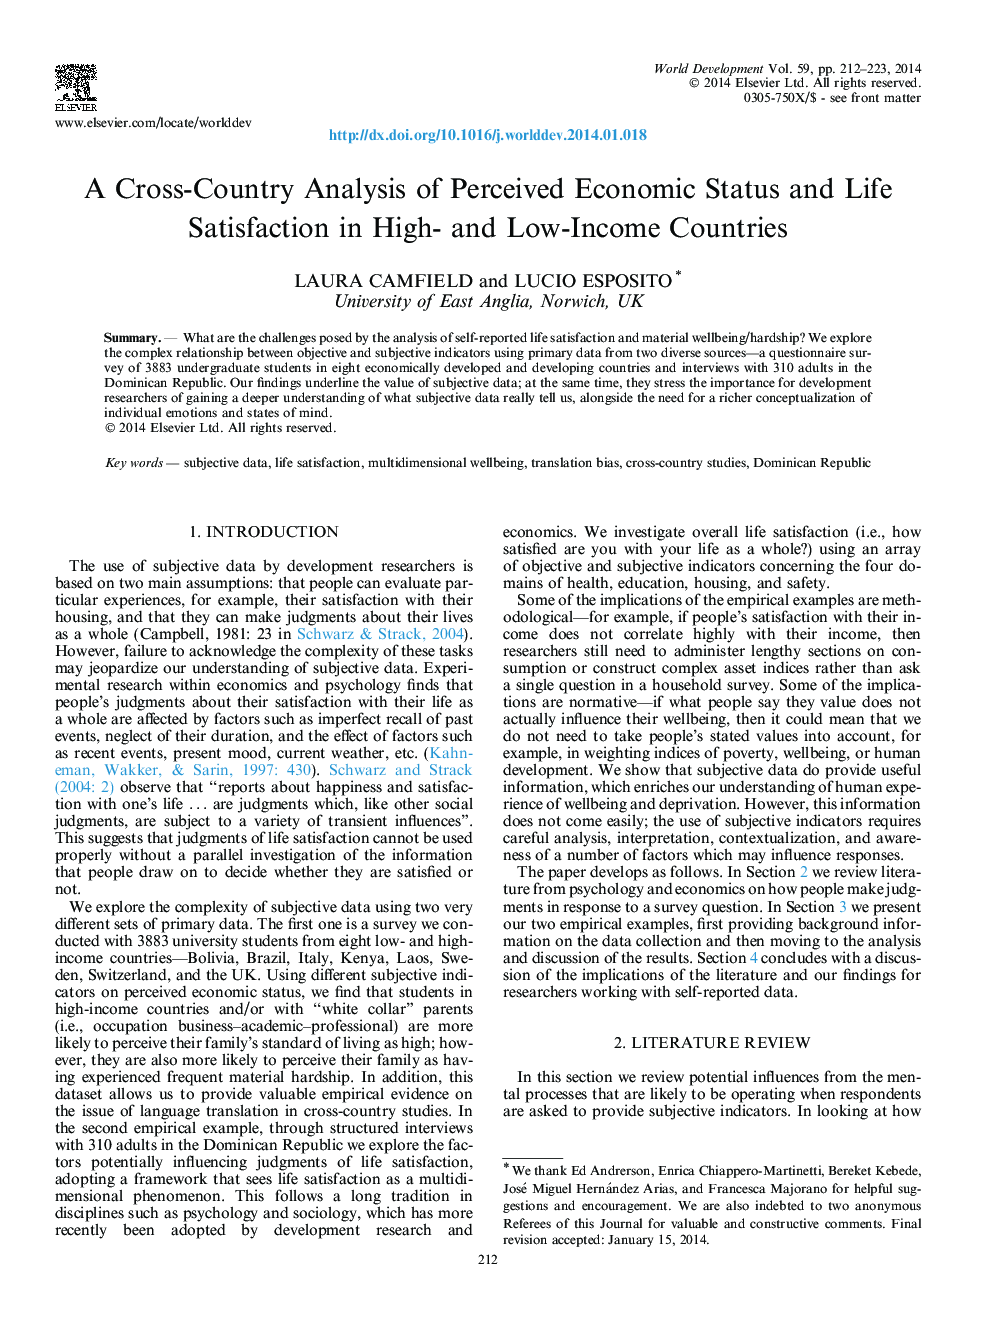 تحلیل متقابل کشور از وضعیت اقتصادی درک شده و رضایت از زندگی در کشورهای با درآمد بالا و کم درآمد 